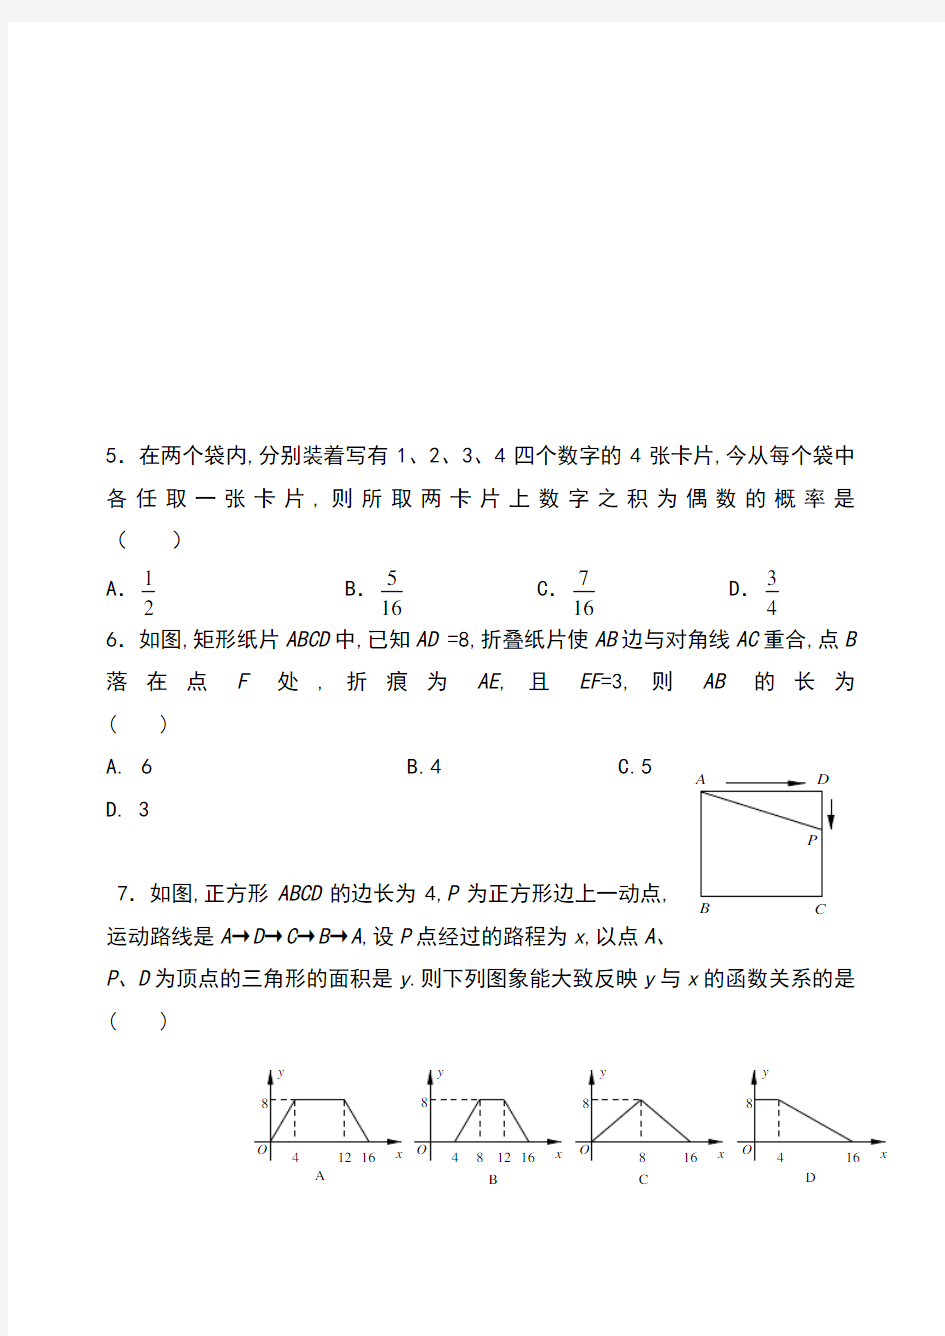 2020-2021学年北京市清华附中2020级高一新生分班考试数学试卷及答案